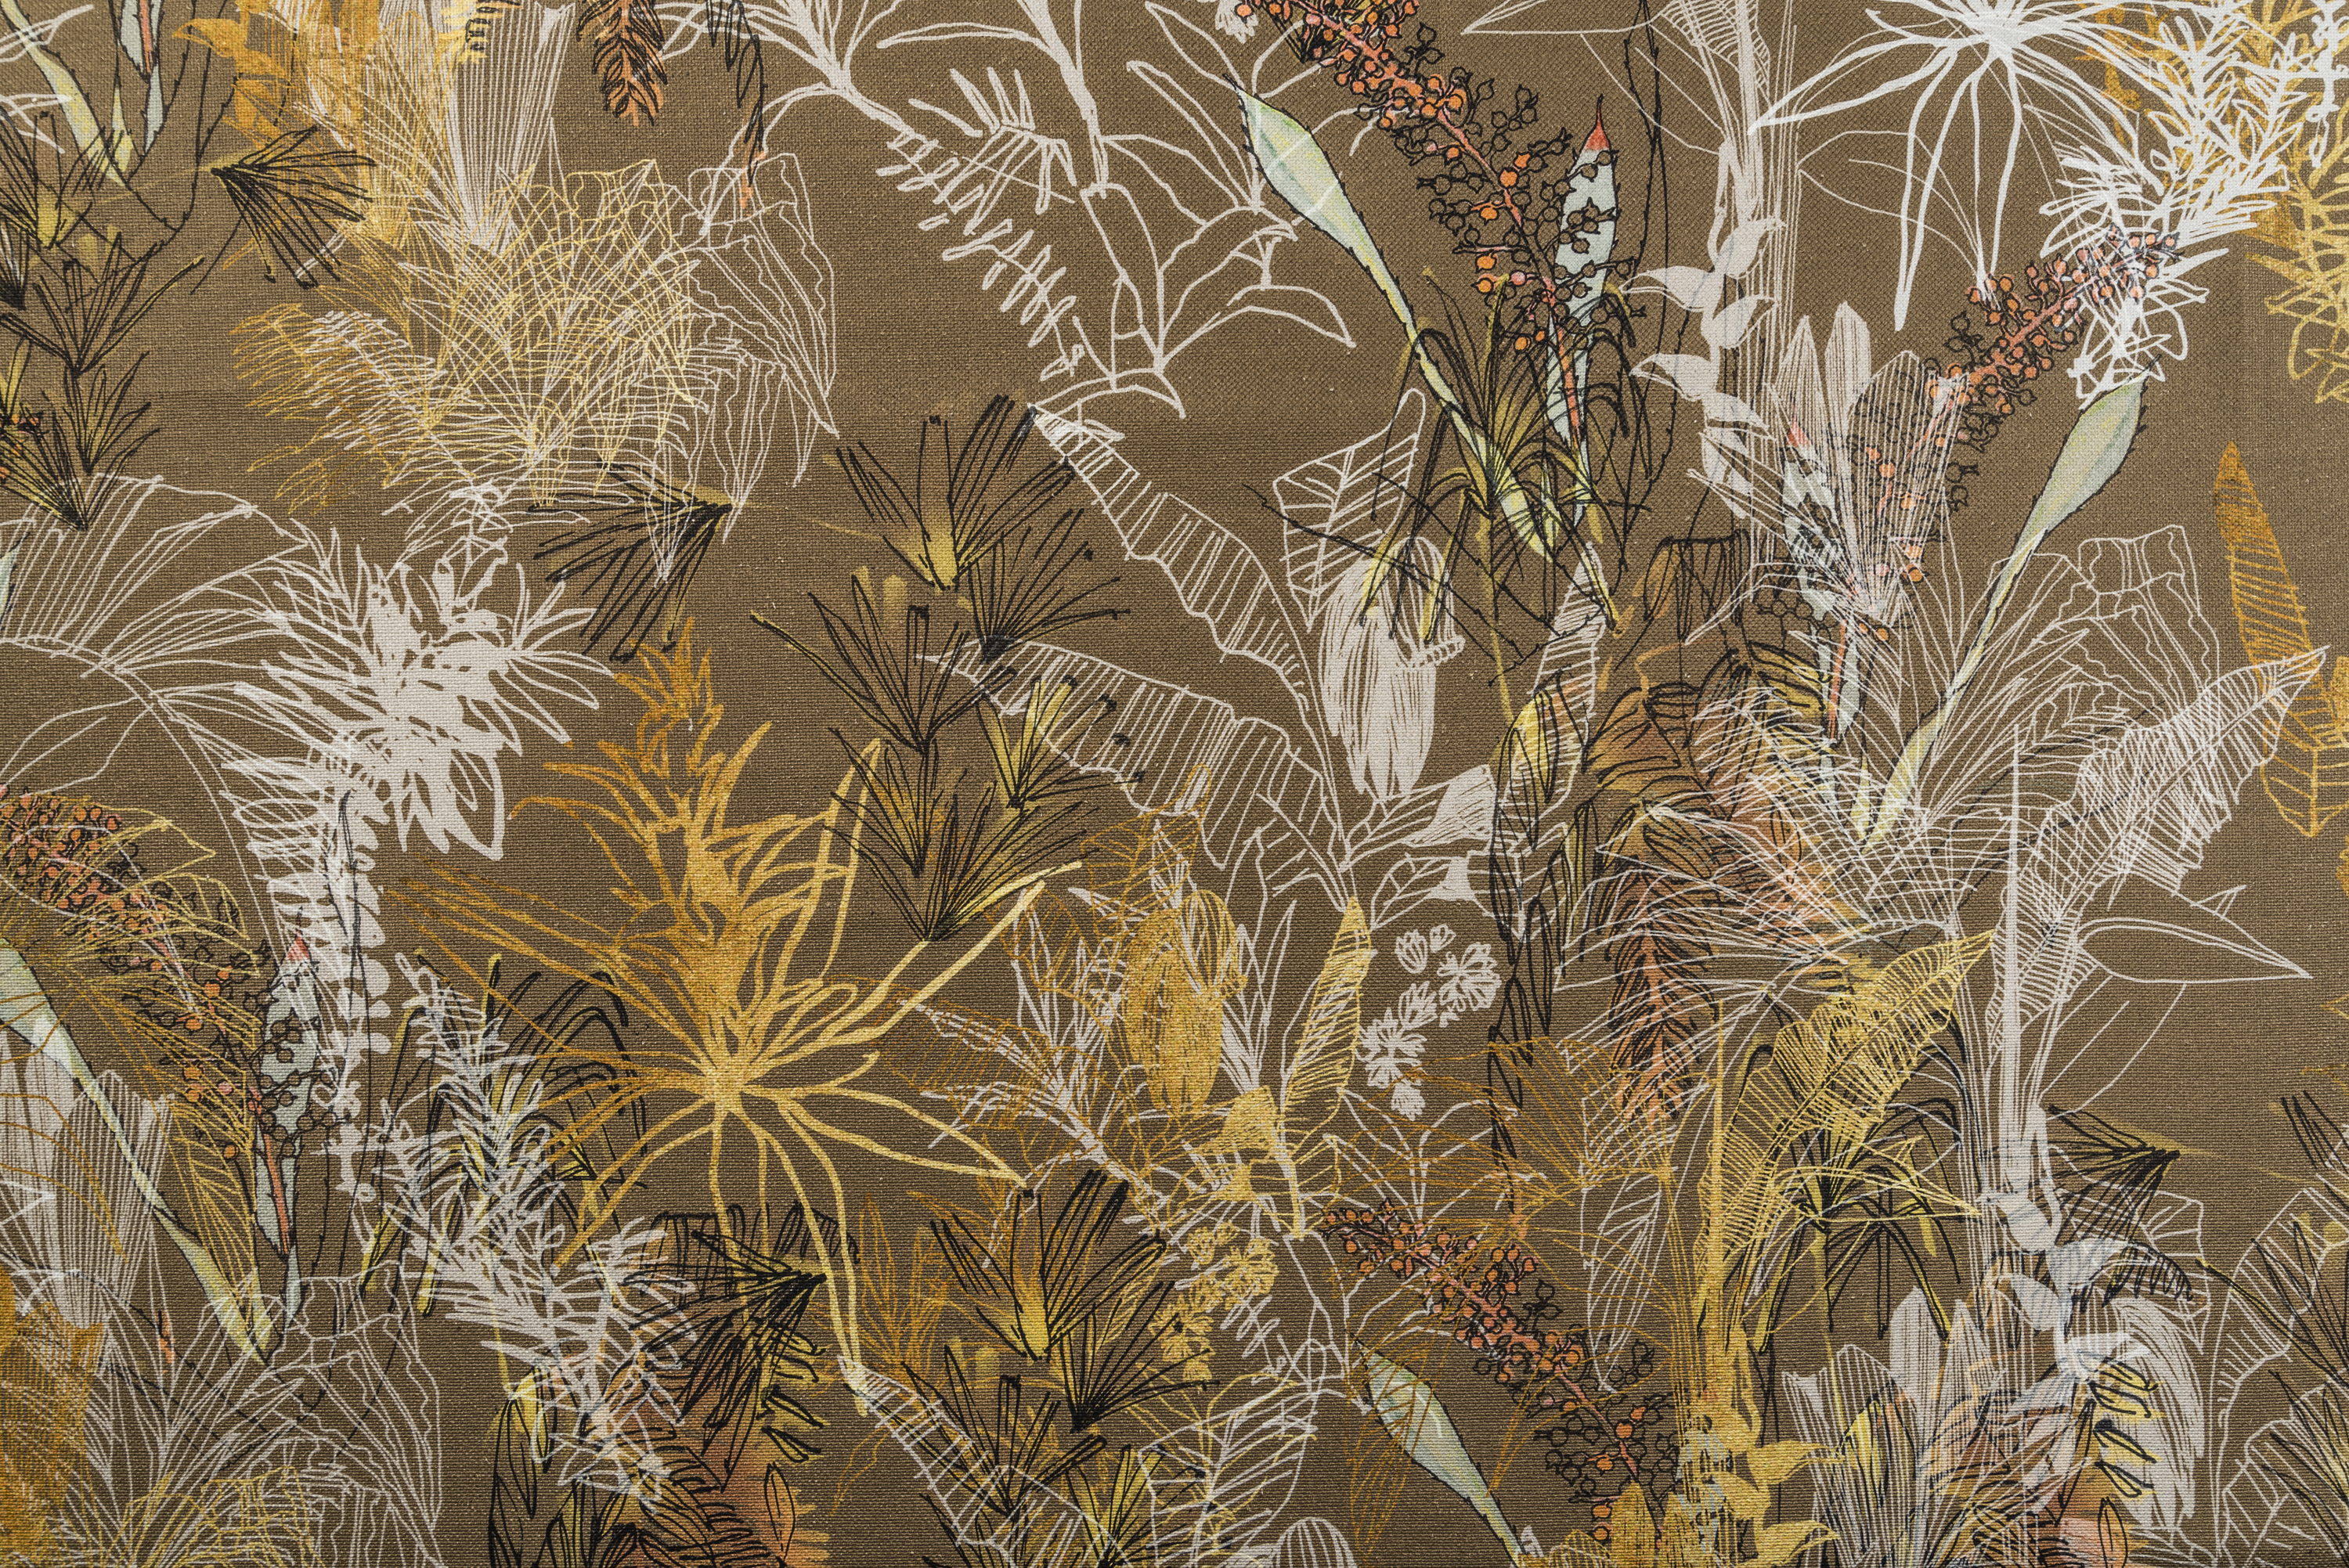 Estampa Trópicos I, por Ana Laet. “Adoro fazer estampas. Reinventar uma flor. Montar paisagens. Imaginar nossos trópicos em paredes e vestidos que passeiam por aí”. Imagem: Edson Garcia.